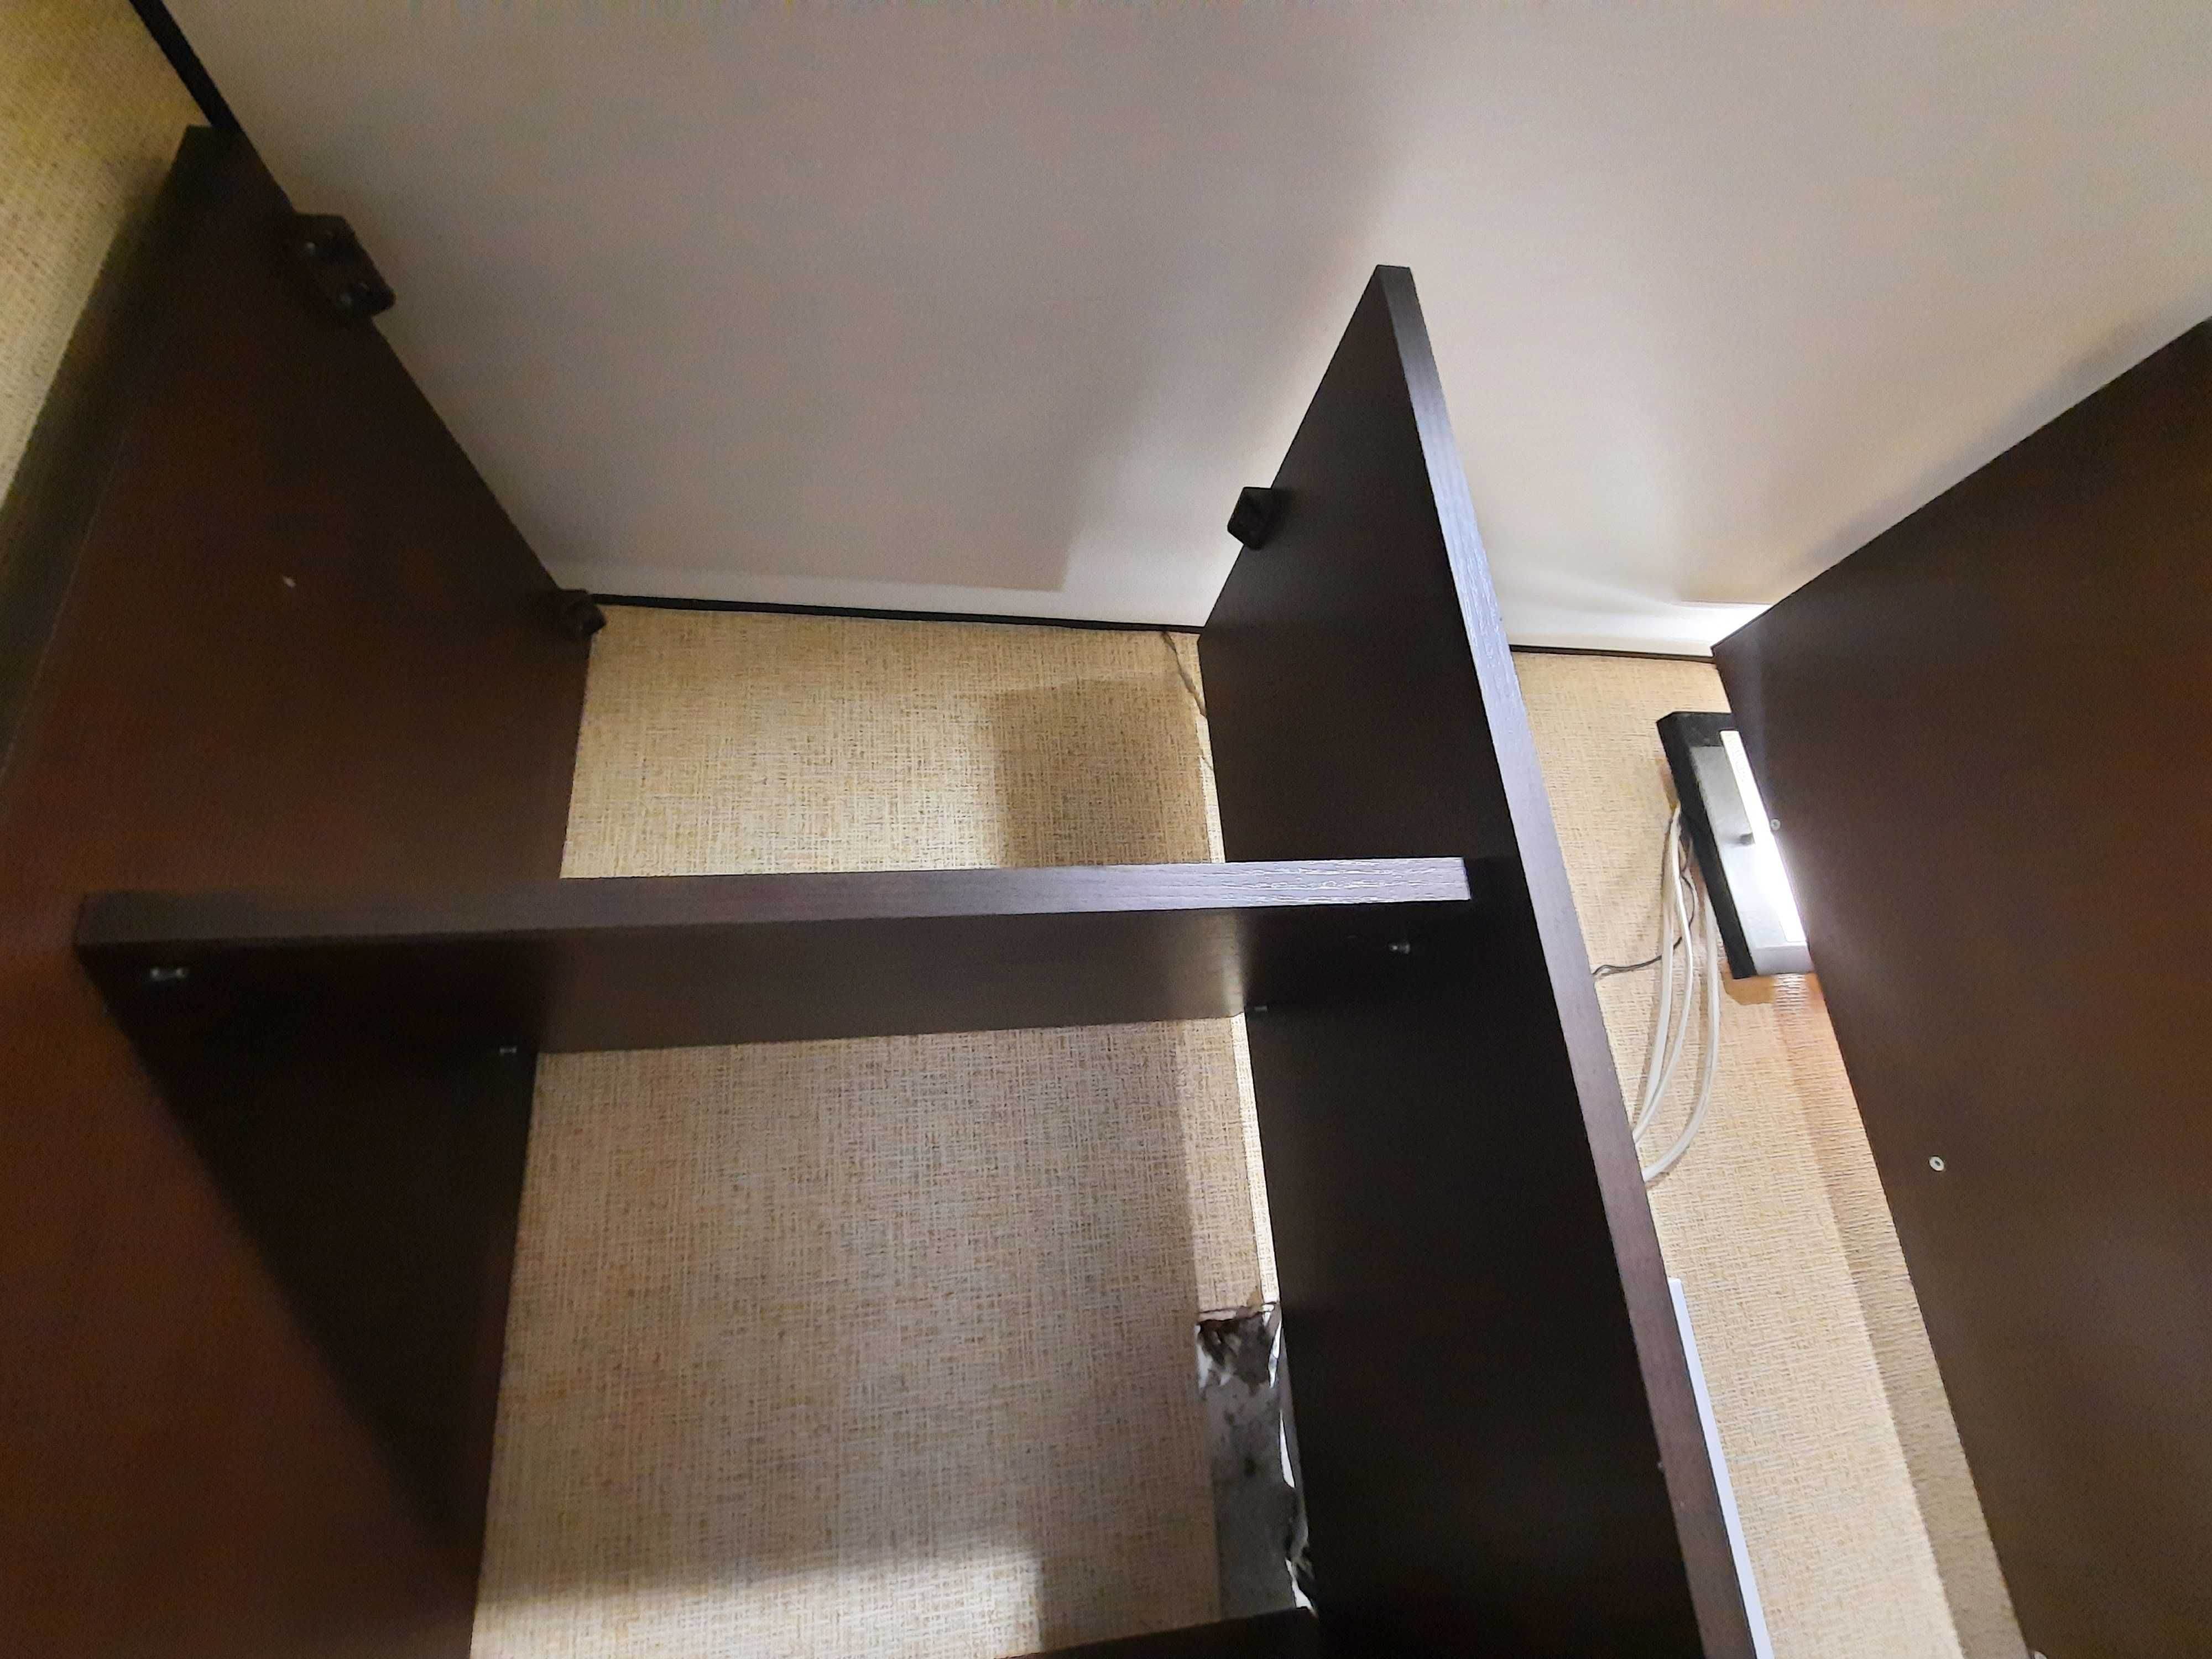 Шкаф (шафа) цвет темный венге, двери со светлыми вставками